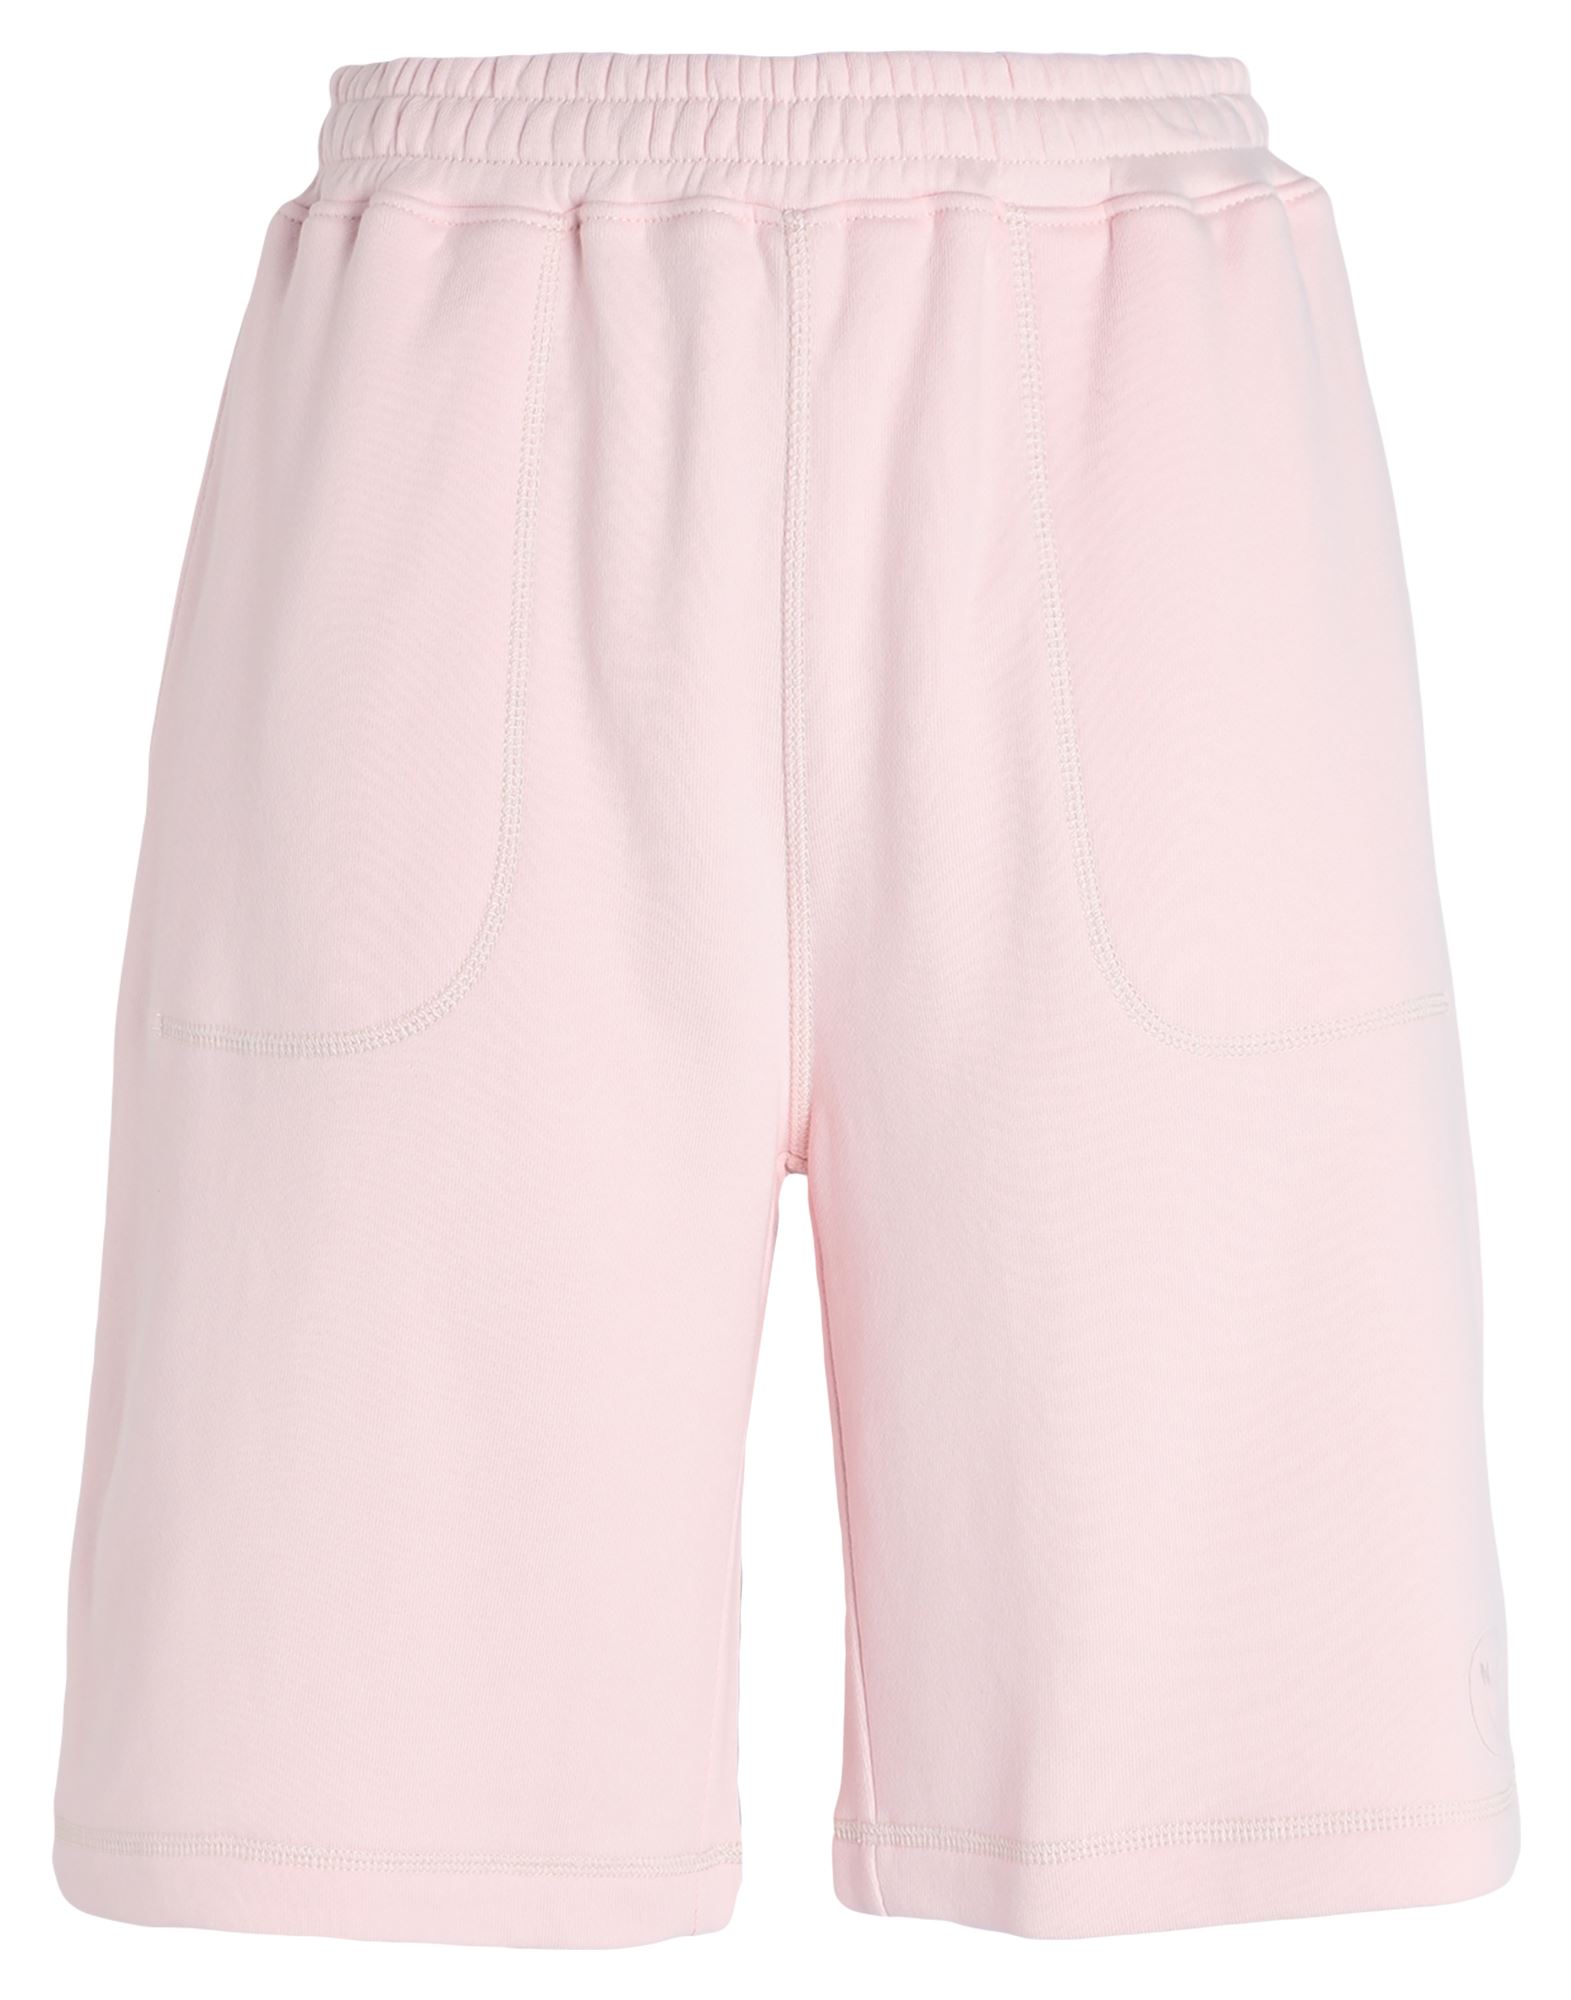 Ninety Percent Woman Shorts & Bermuda Shorts Pink Size Xl Organic Cotton